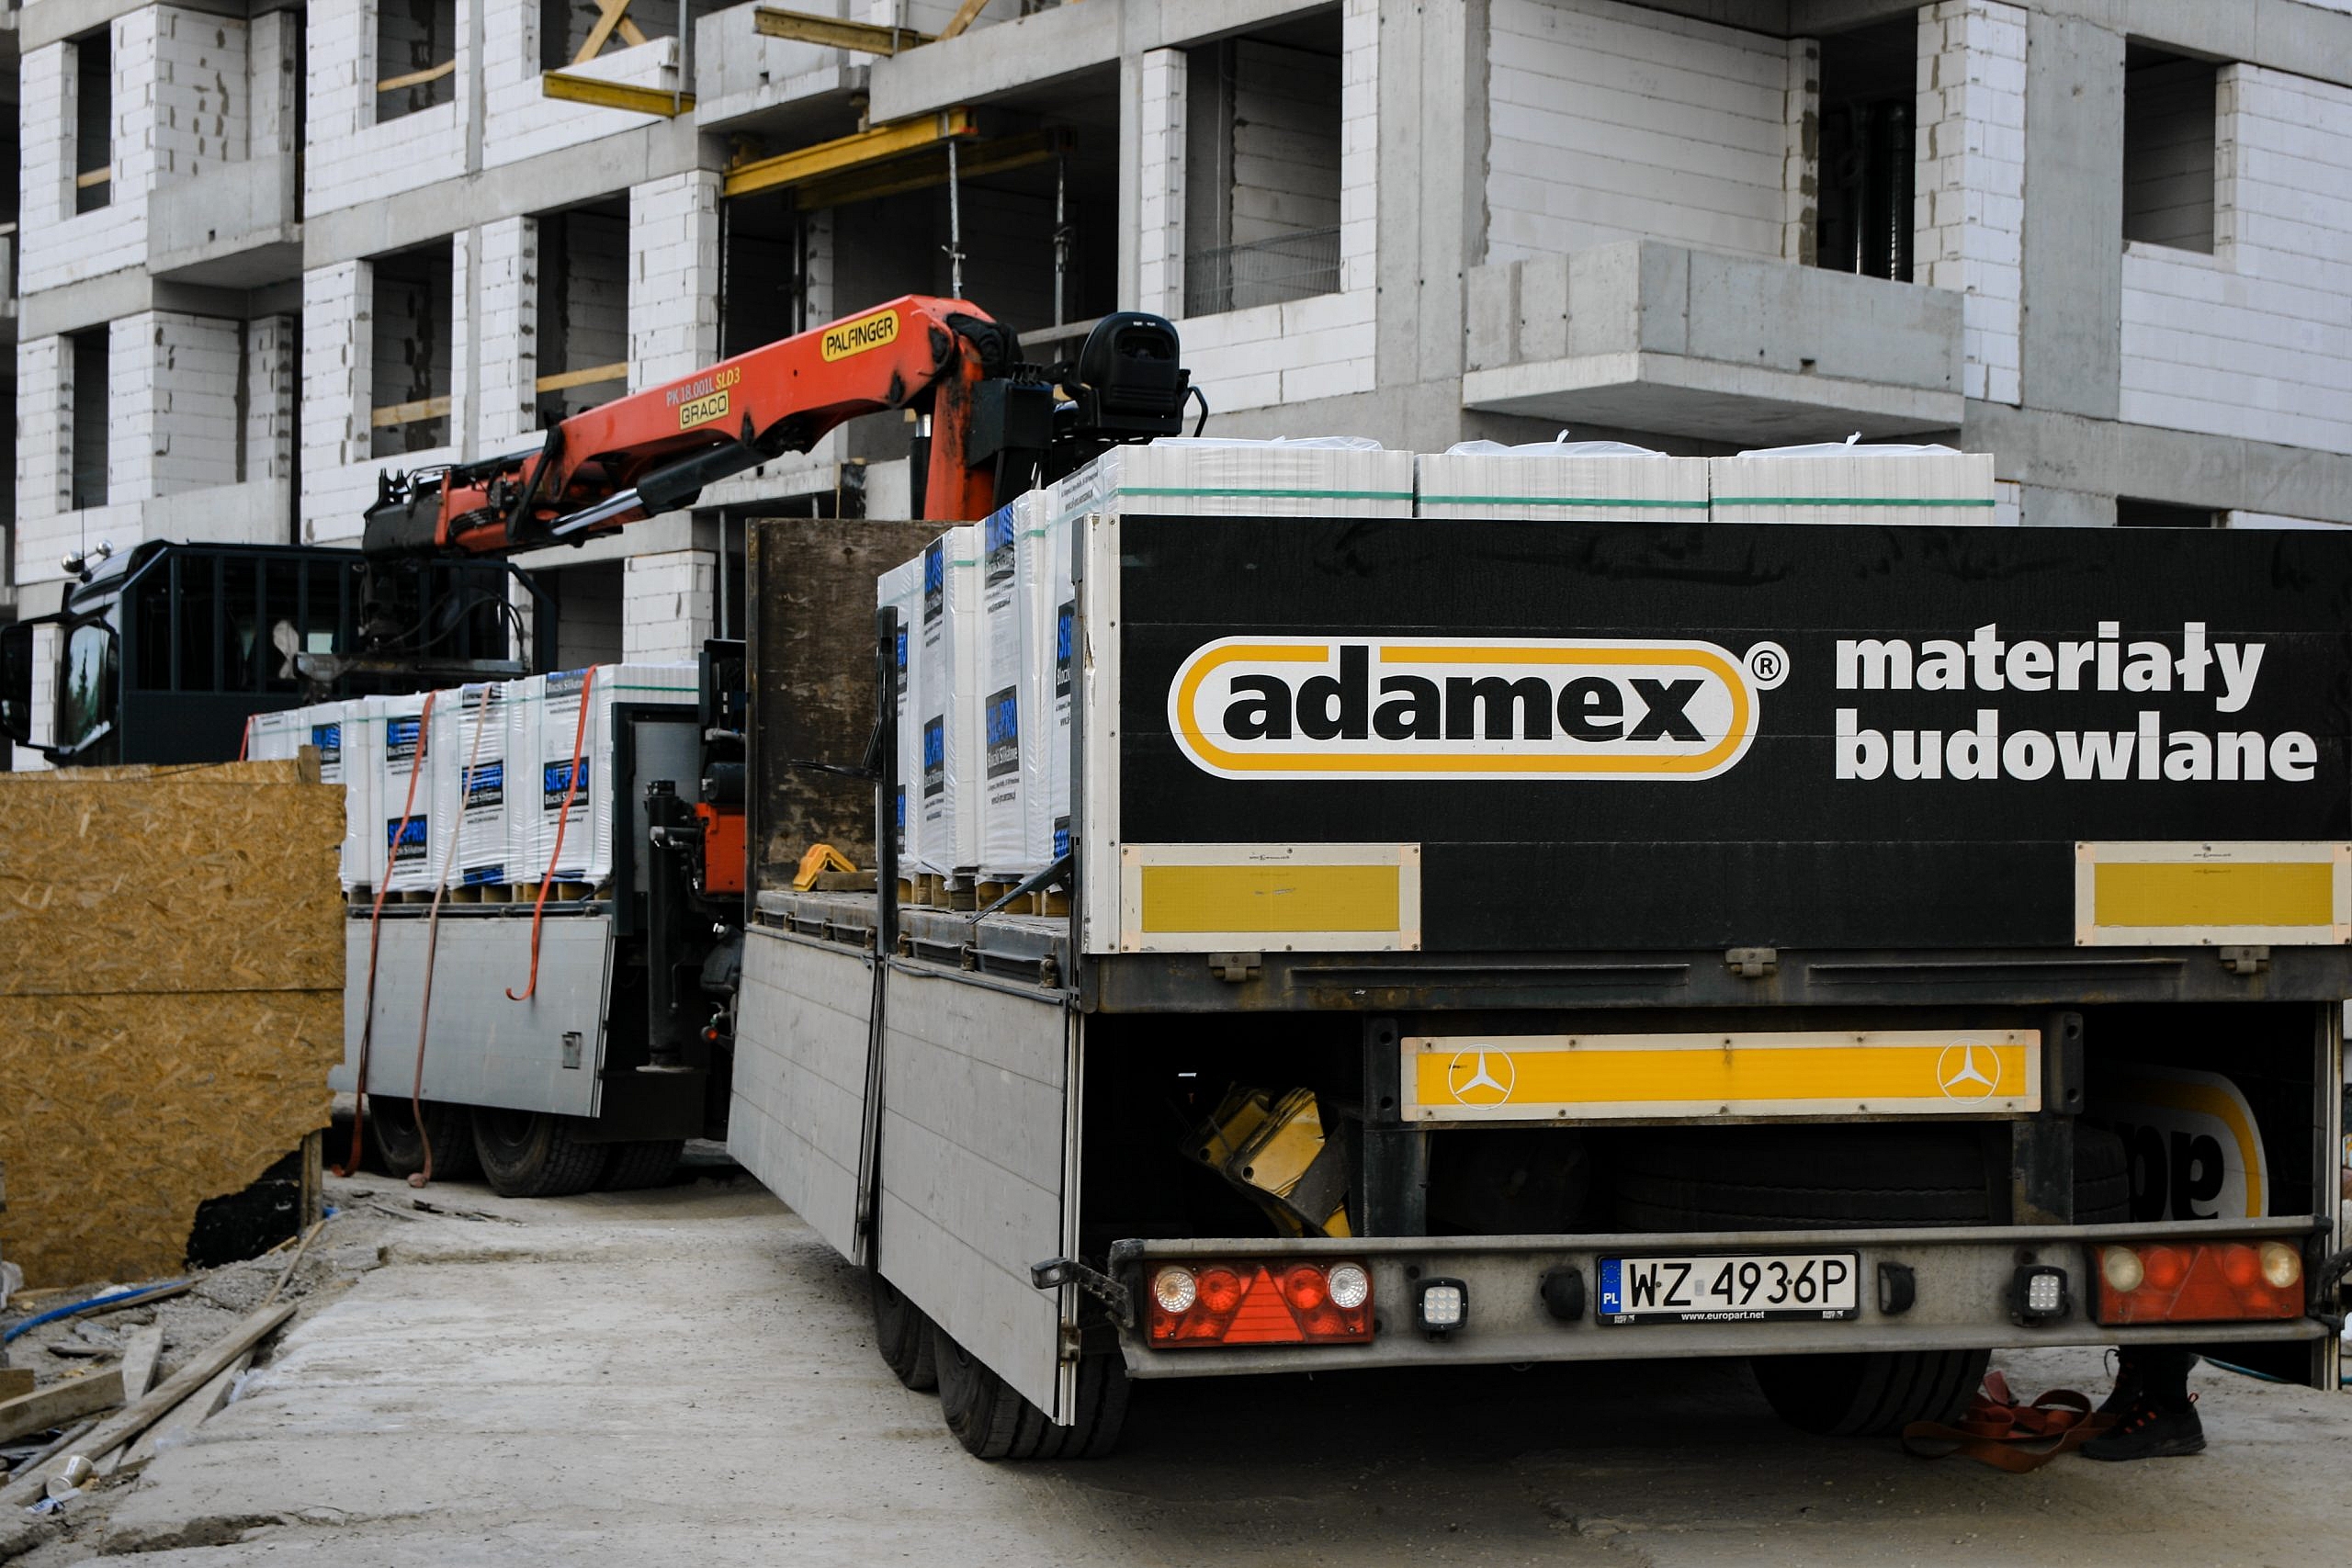 Niezawodny i terminowy transport Adamex